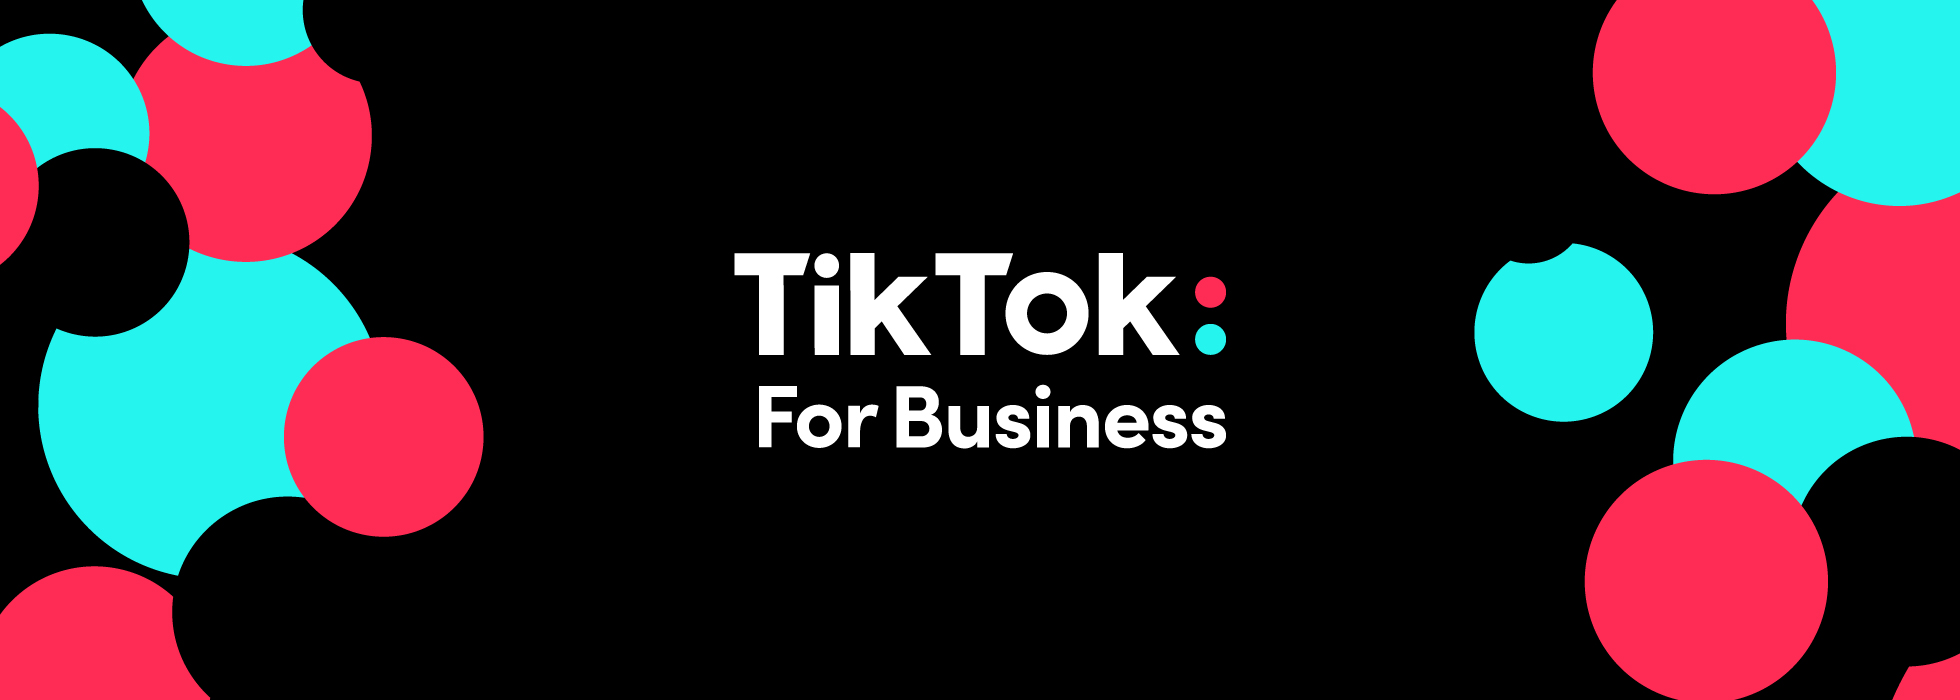 品牌故事 - titkok for business